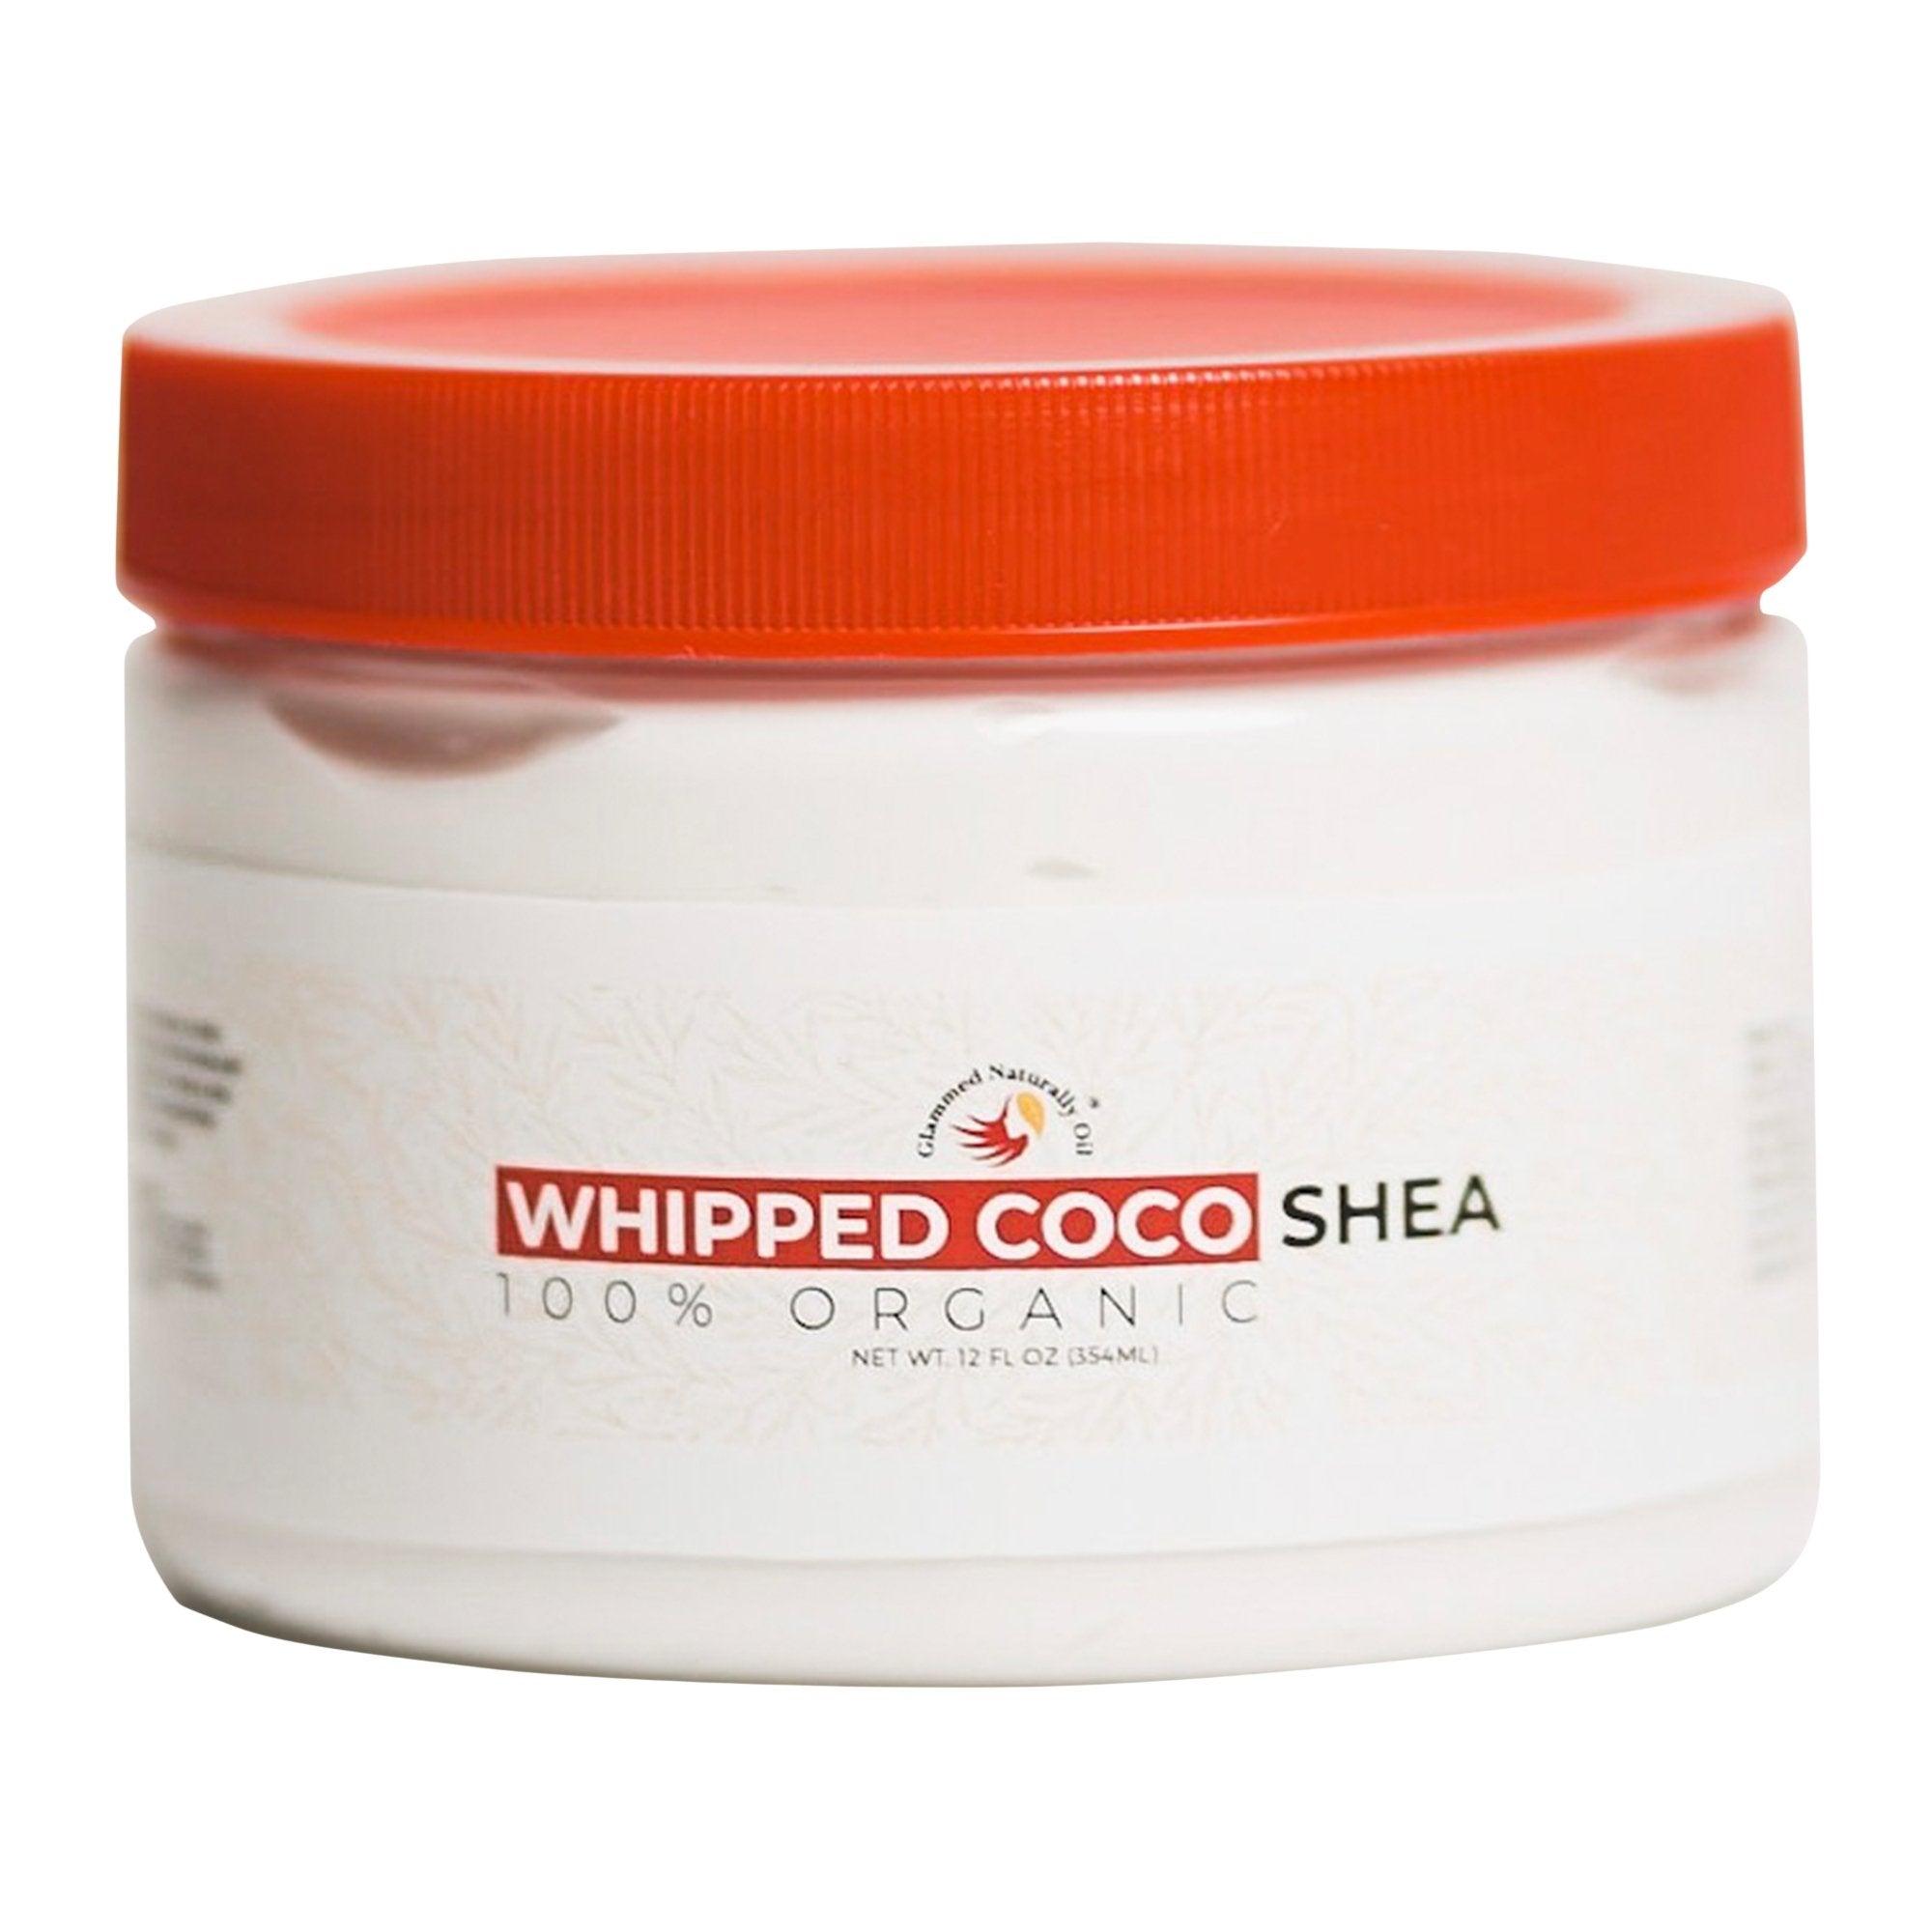 Moisturizing Whipped Coco Shea Hair & Body Butter - GlammedNaturallyOil